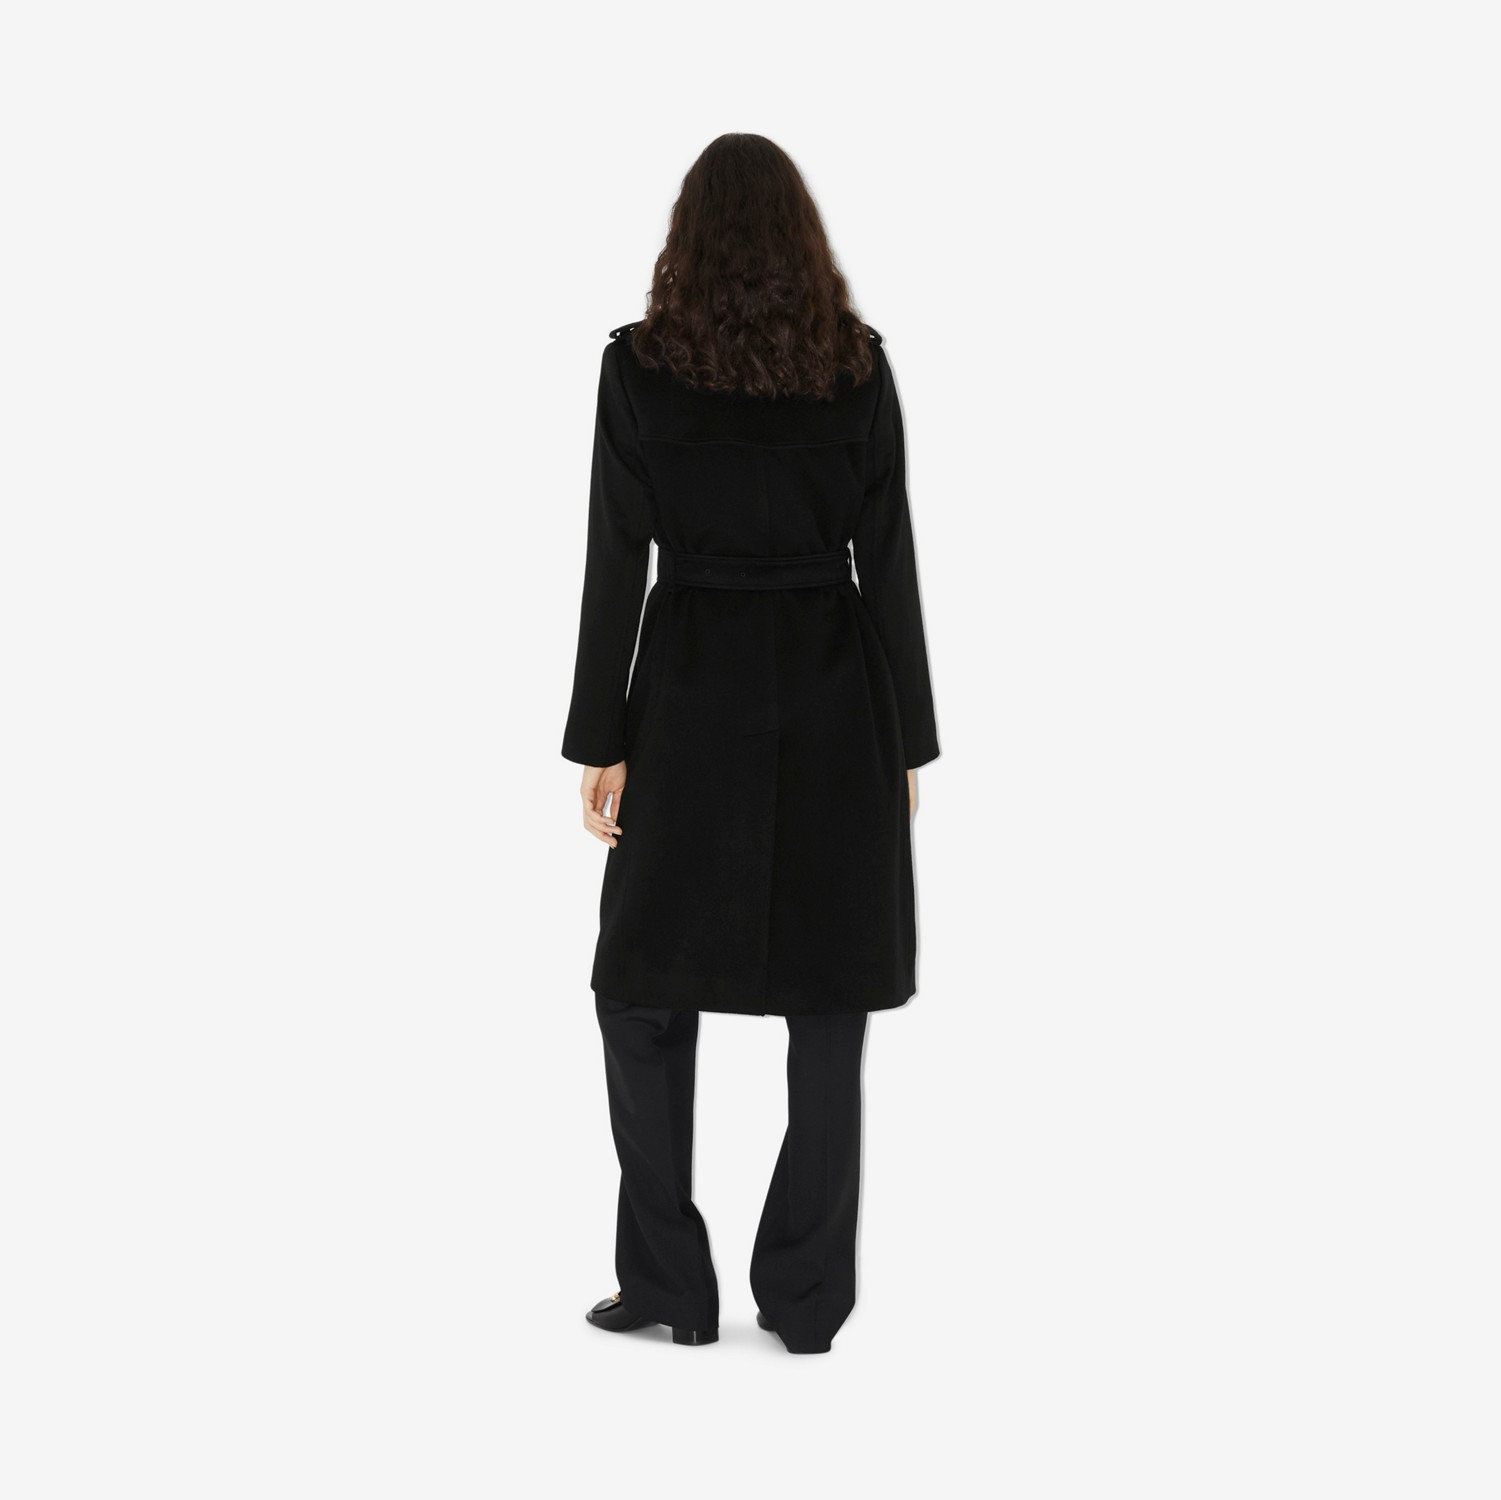 Trench coat Kensington em cashmere (Preto) - Mulheres | Burberry® oficial